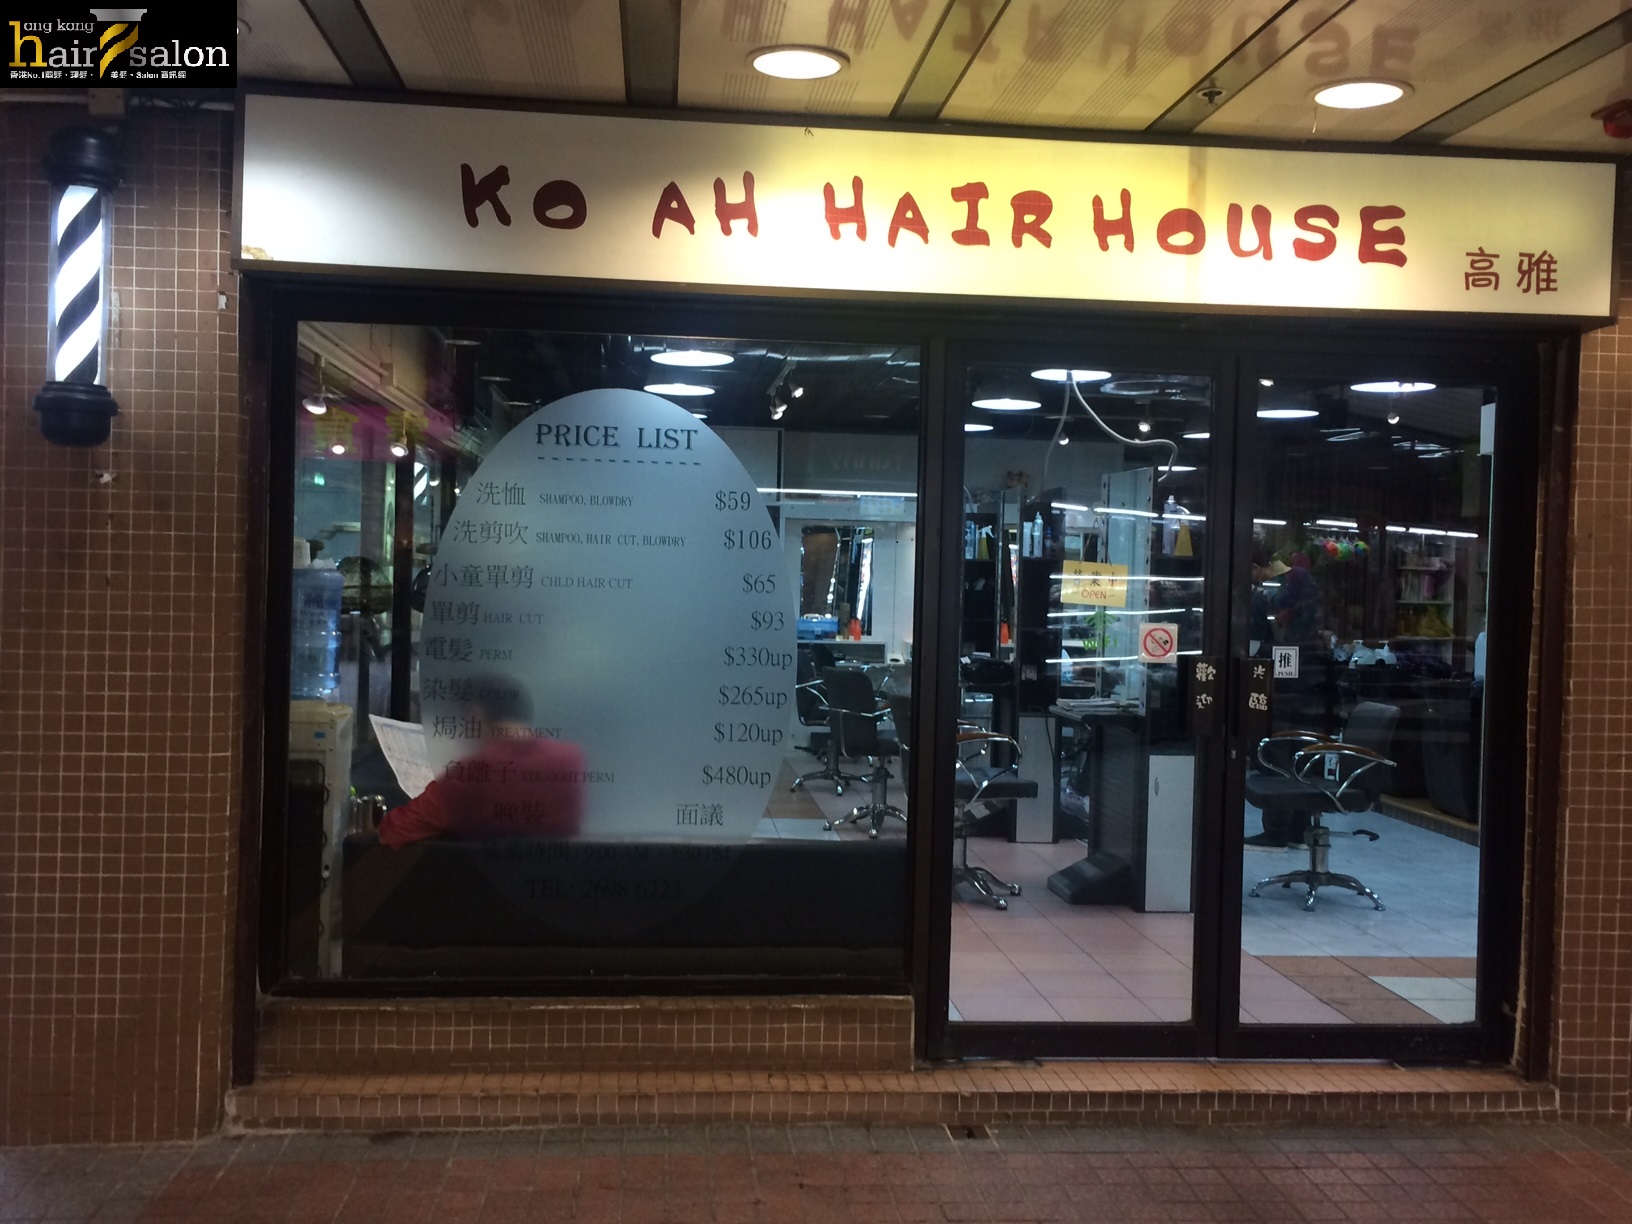 洗剪吹/洗吹造型: 高雅髮型屋 Ko Ah Hair House